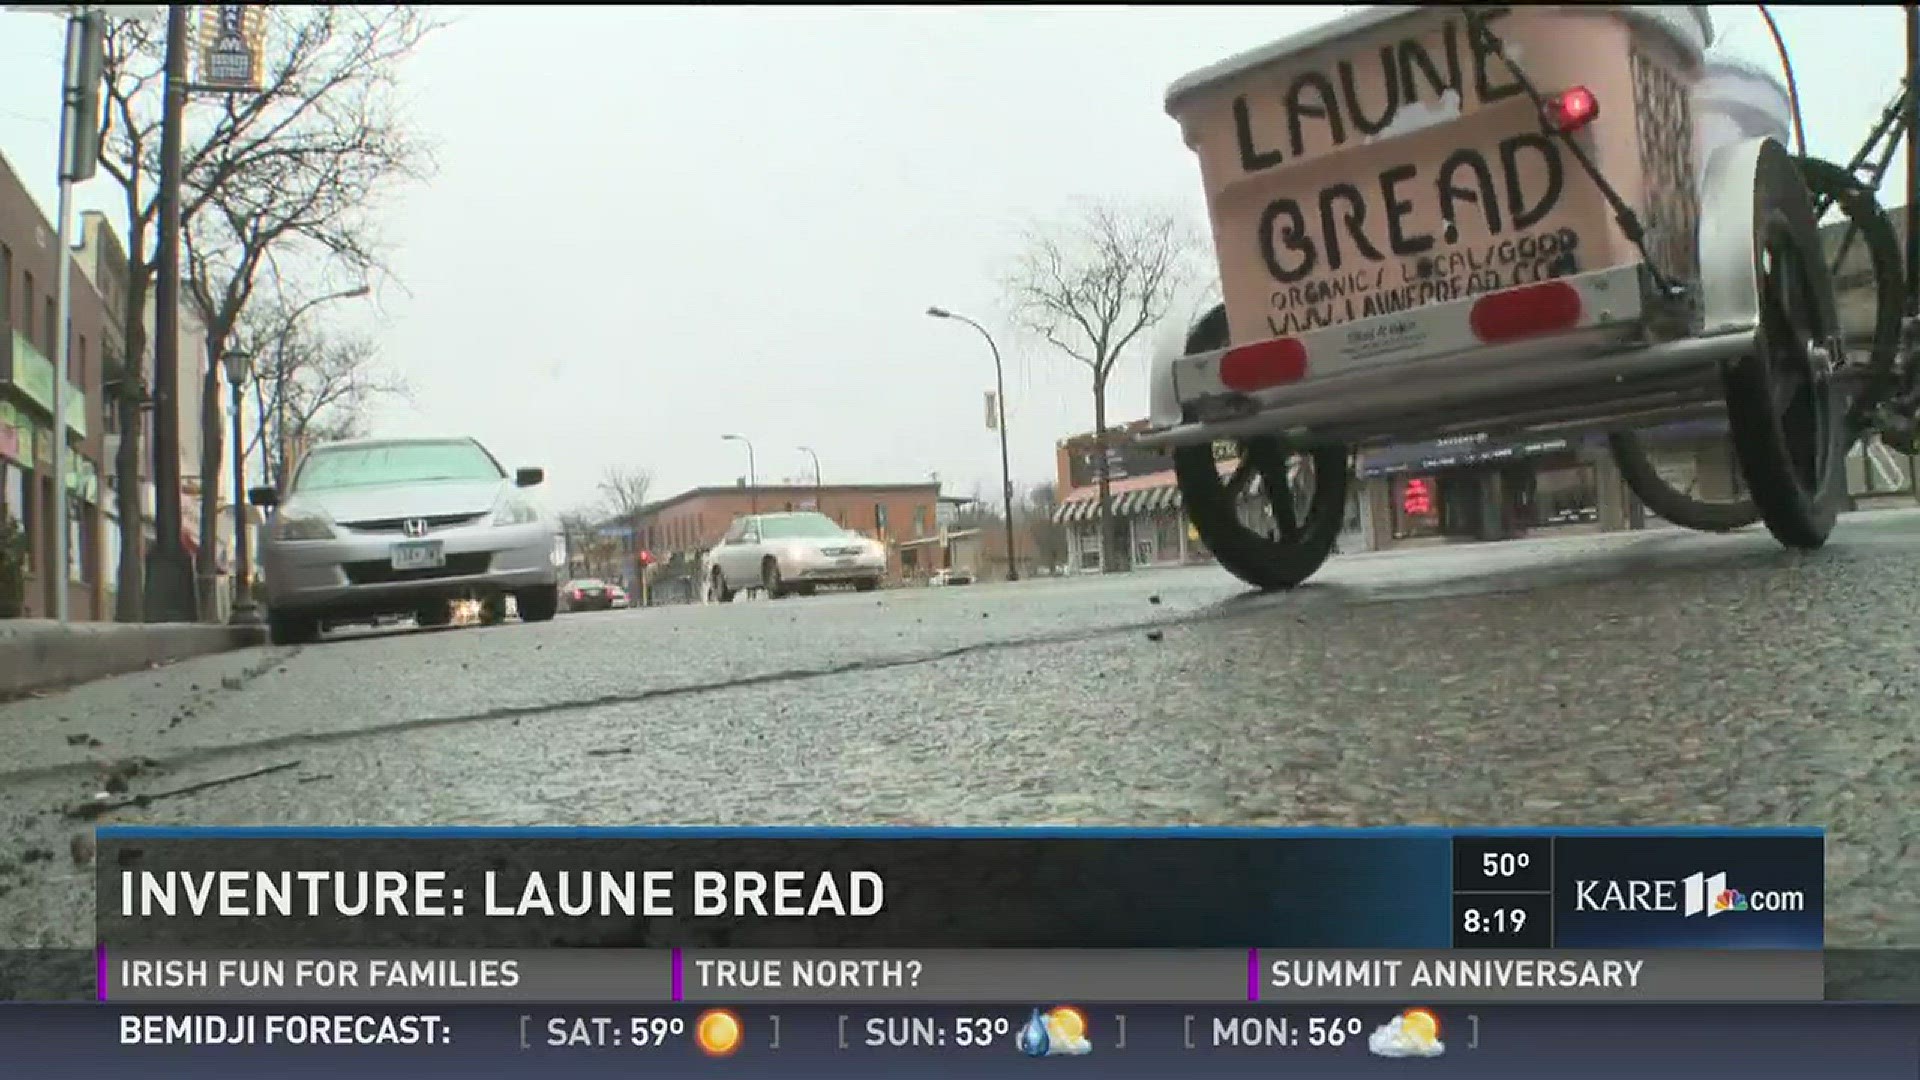 Inventures: Laune Bread